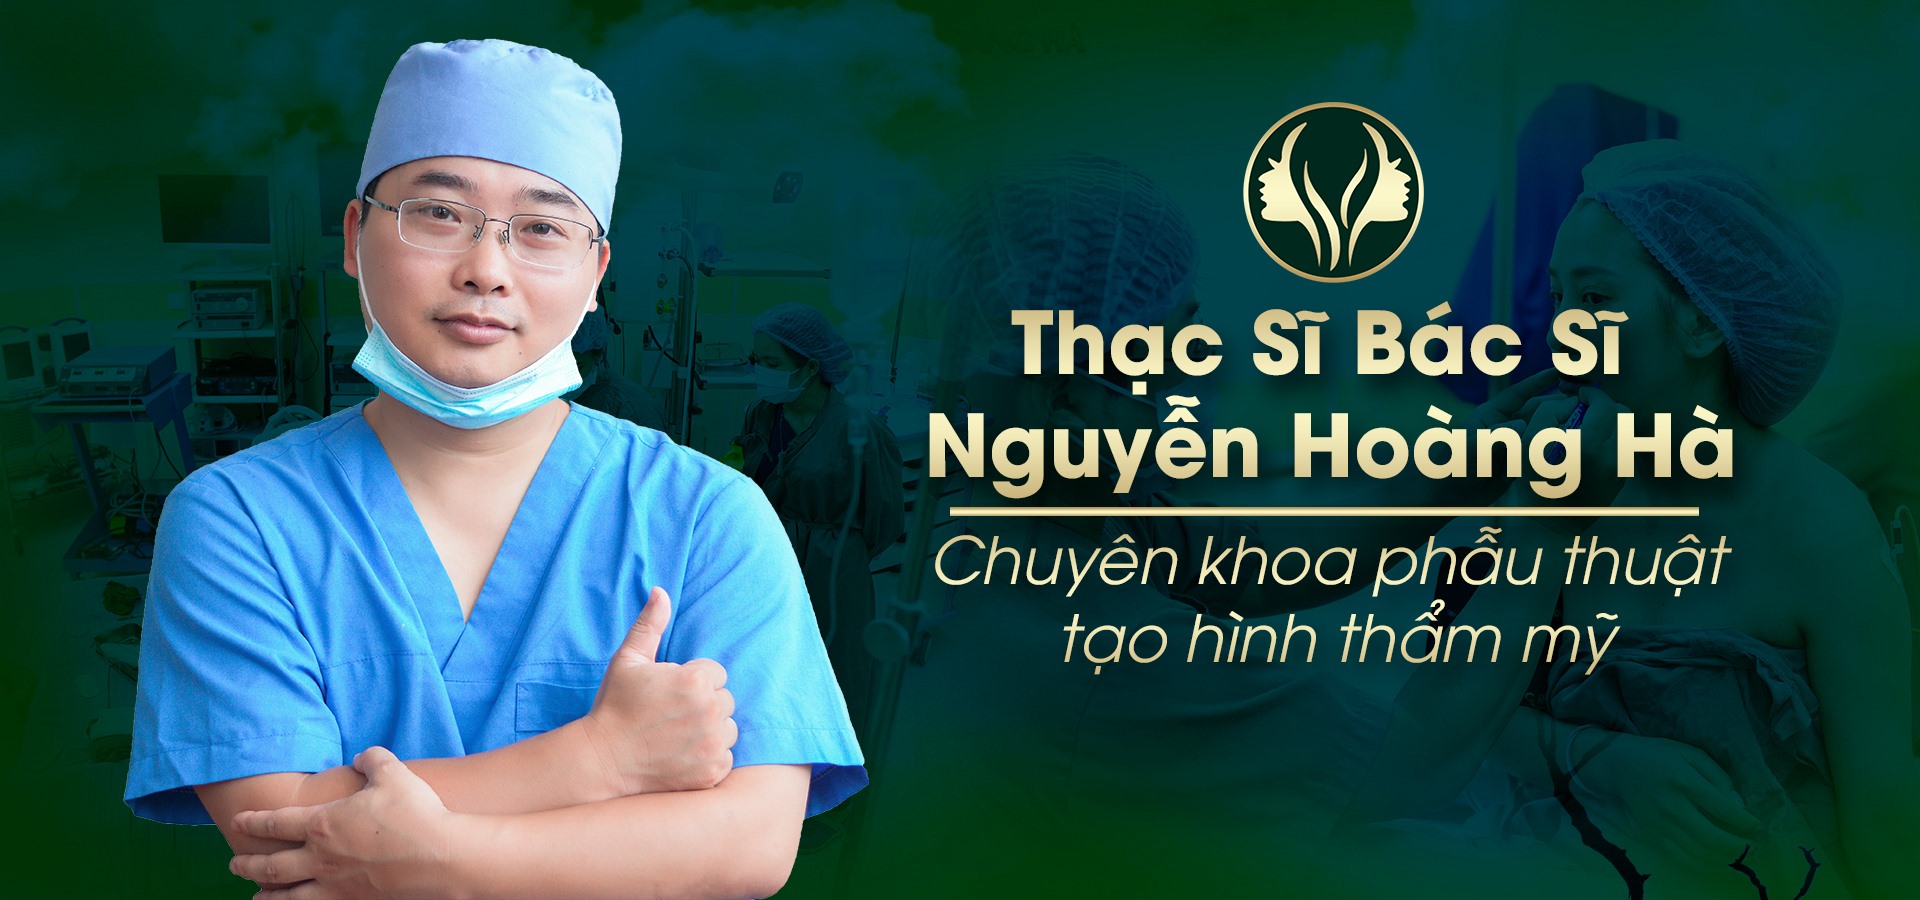 Ths.Bác Sĩ Nguyễn Hoàng Hà: Chuyên Gia Tạo Hình Phẫu Thuật